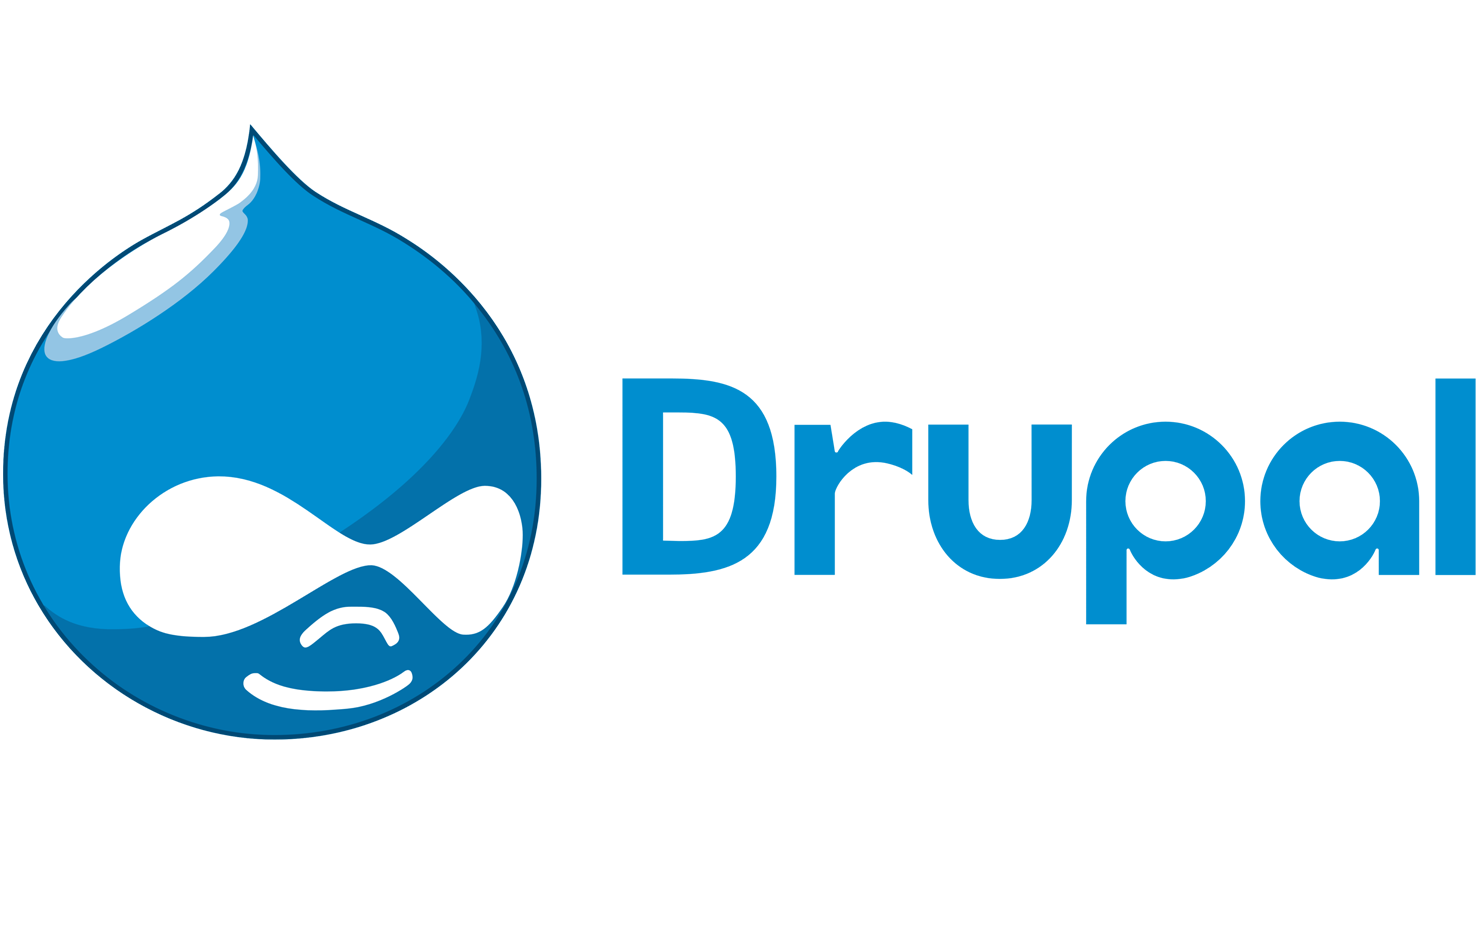 Drupal_logo-4000x1682.png